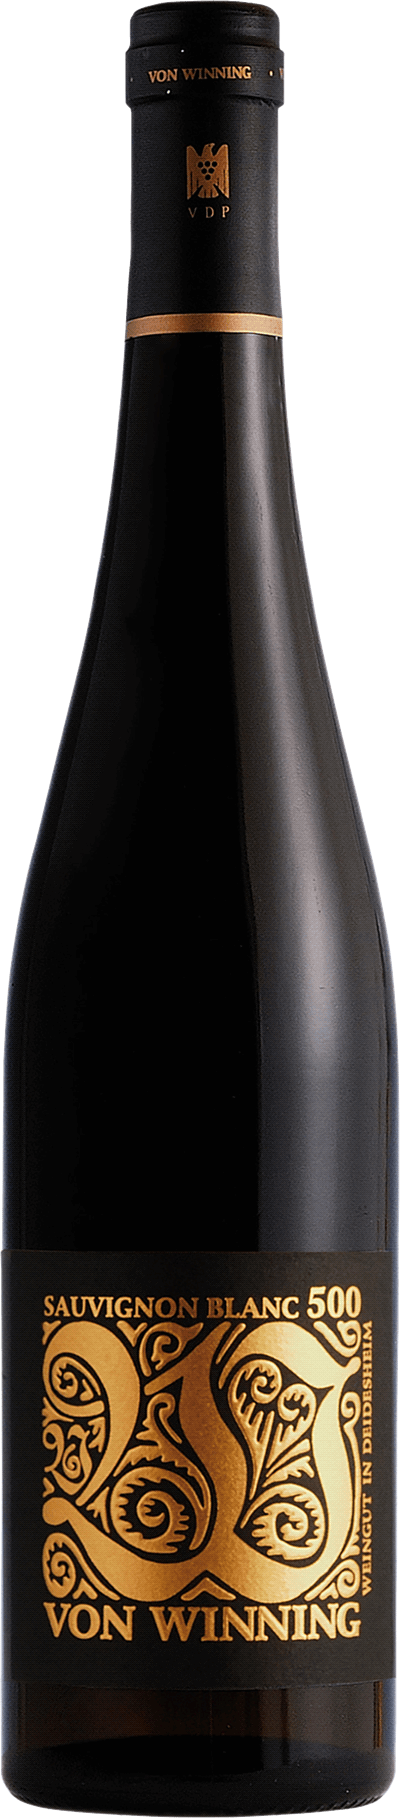 Von Winning Sauvignon Blanc 500, 2021